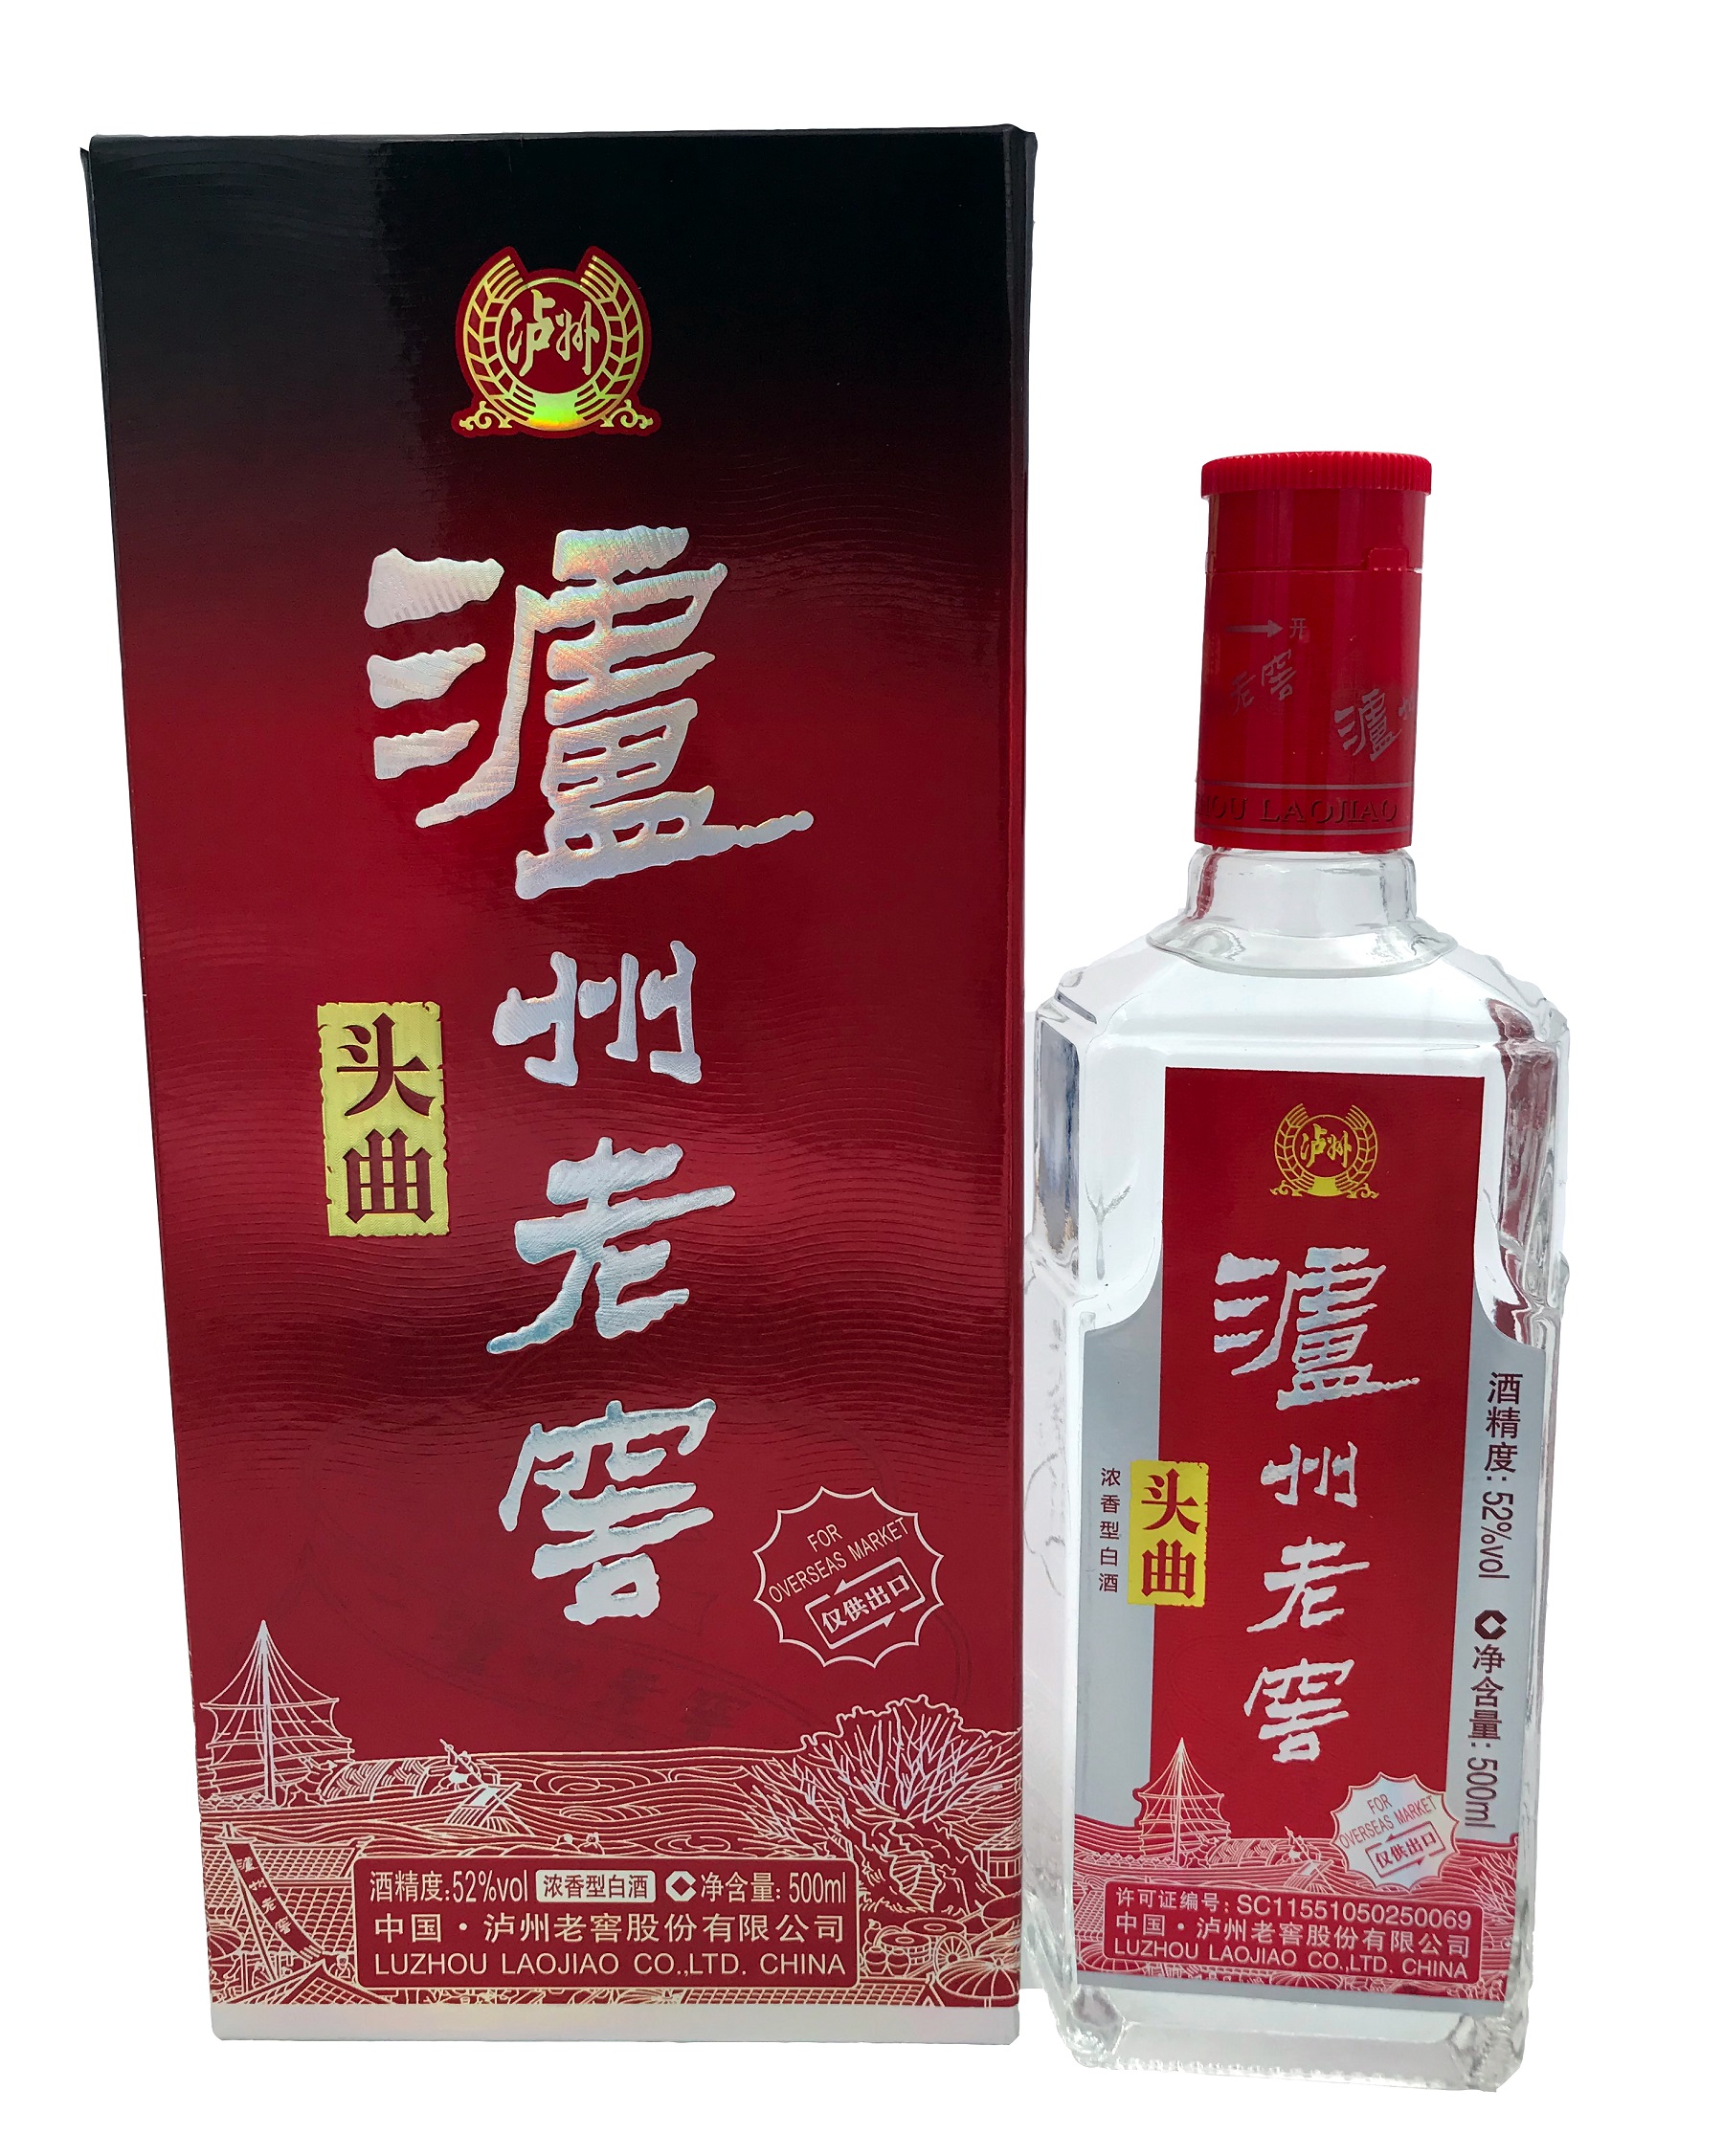 Luzhou Laojiao Tou Qu 52% 500ml Baijiu 头曲 泸州老窖 中国白酒